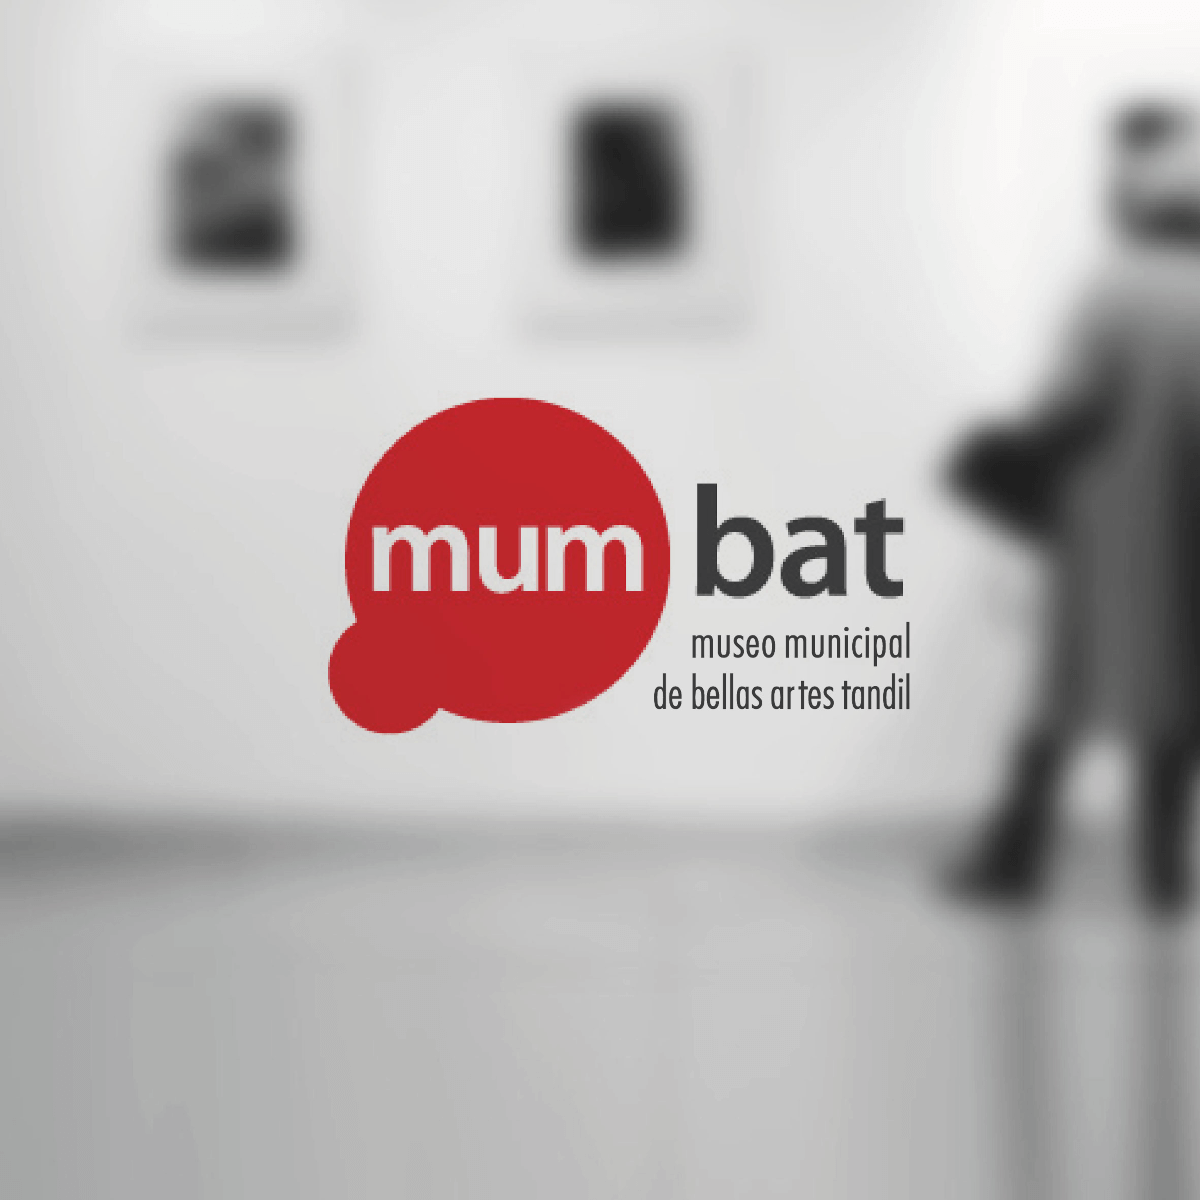 Logotipo Mumbat sobre foto borrosa en blanco y negro